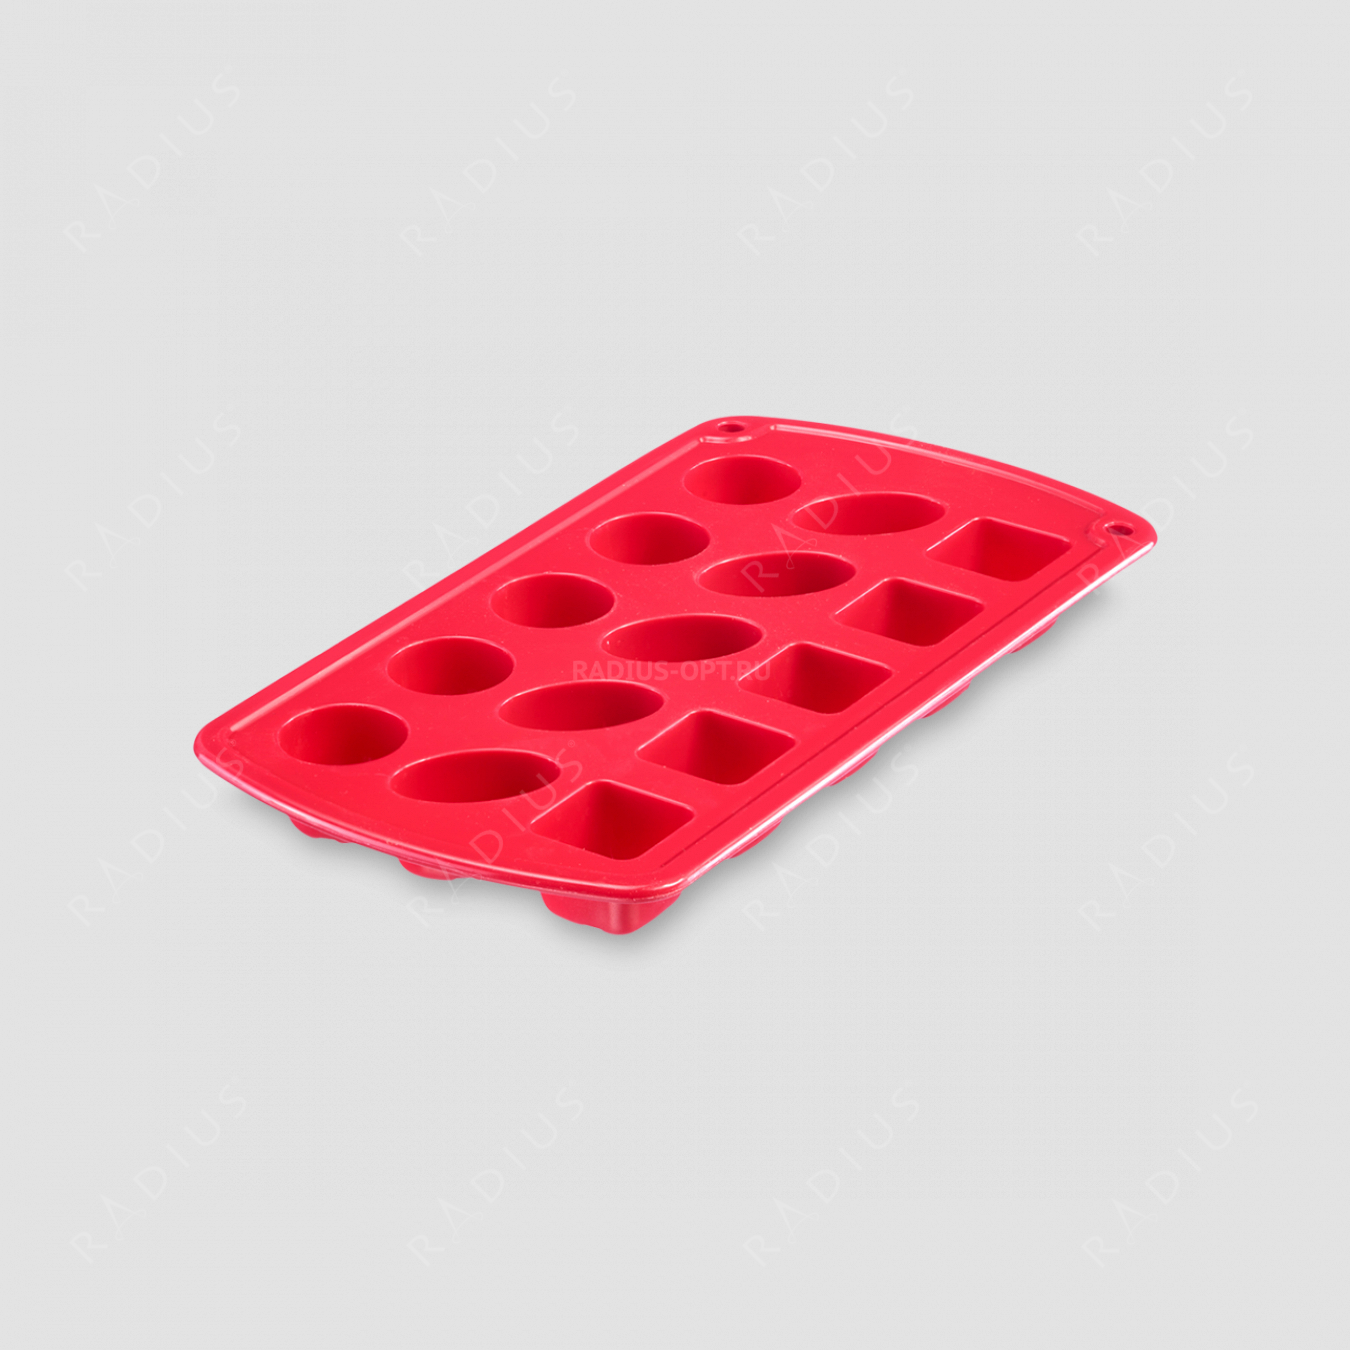 Форма для приготовления льда и шоколада, силикон, цвет-красный, серия Silicone, Westmark, Германия